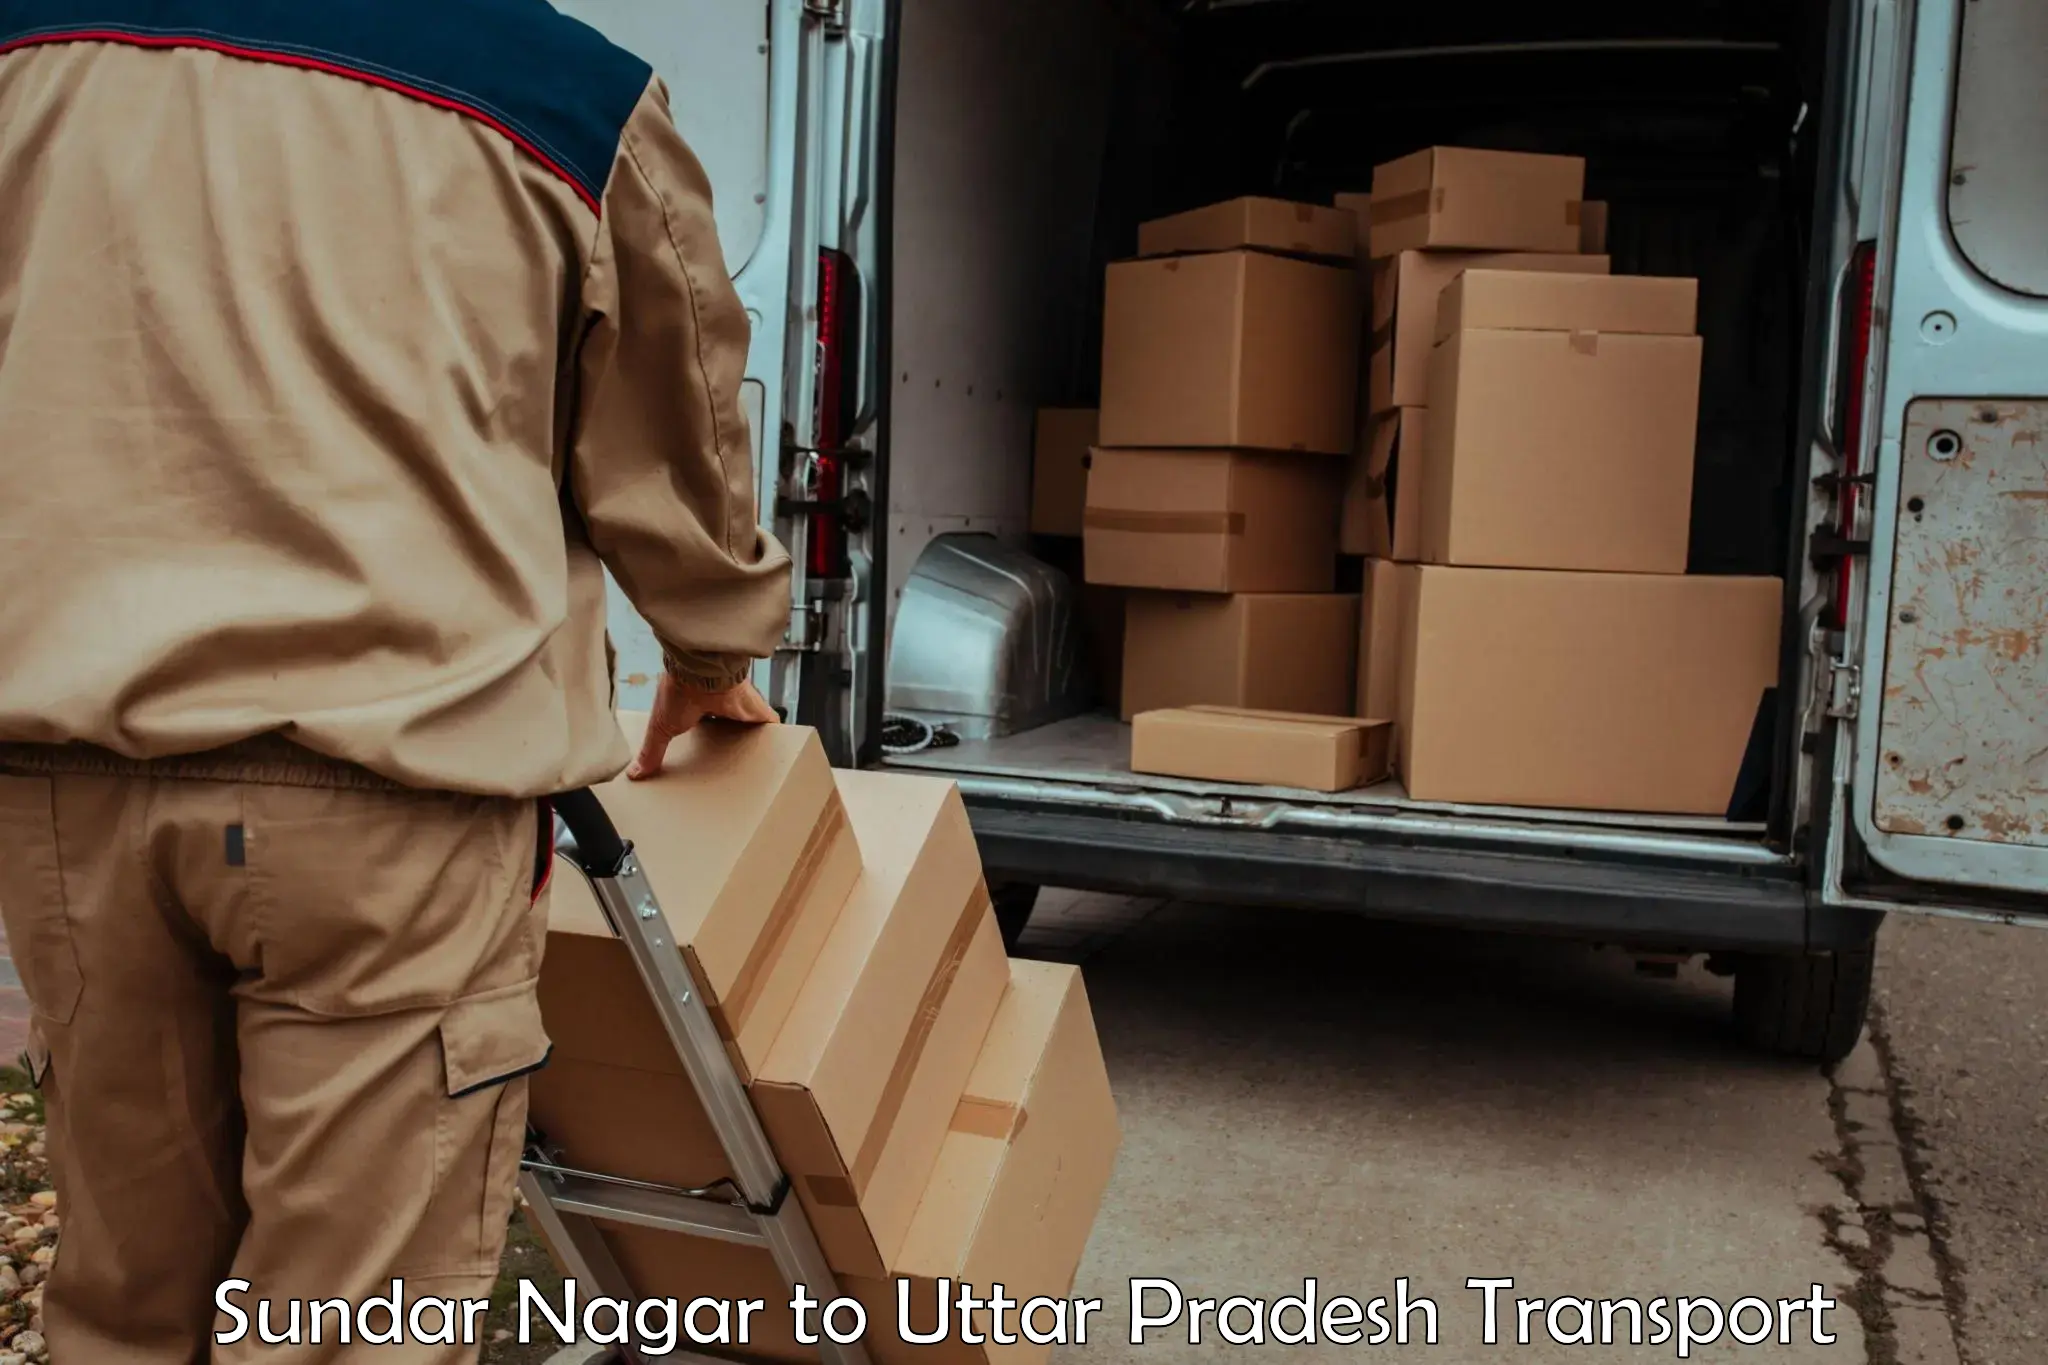 Container transportation services Sundar Nagar to Aligarh Muslim University